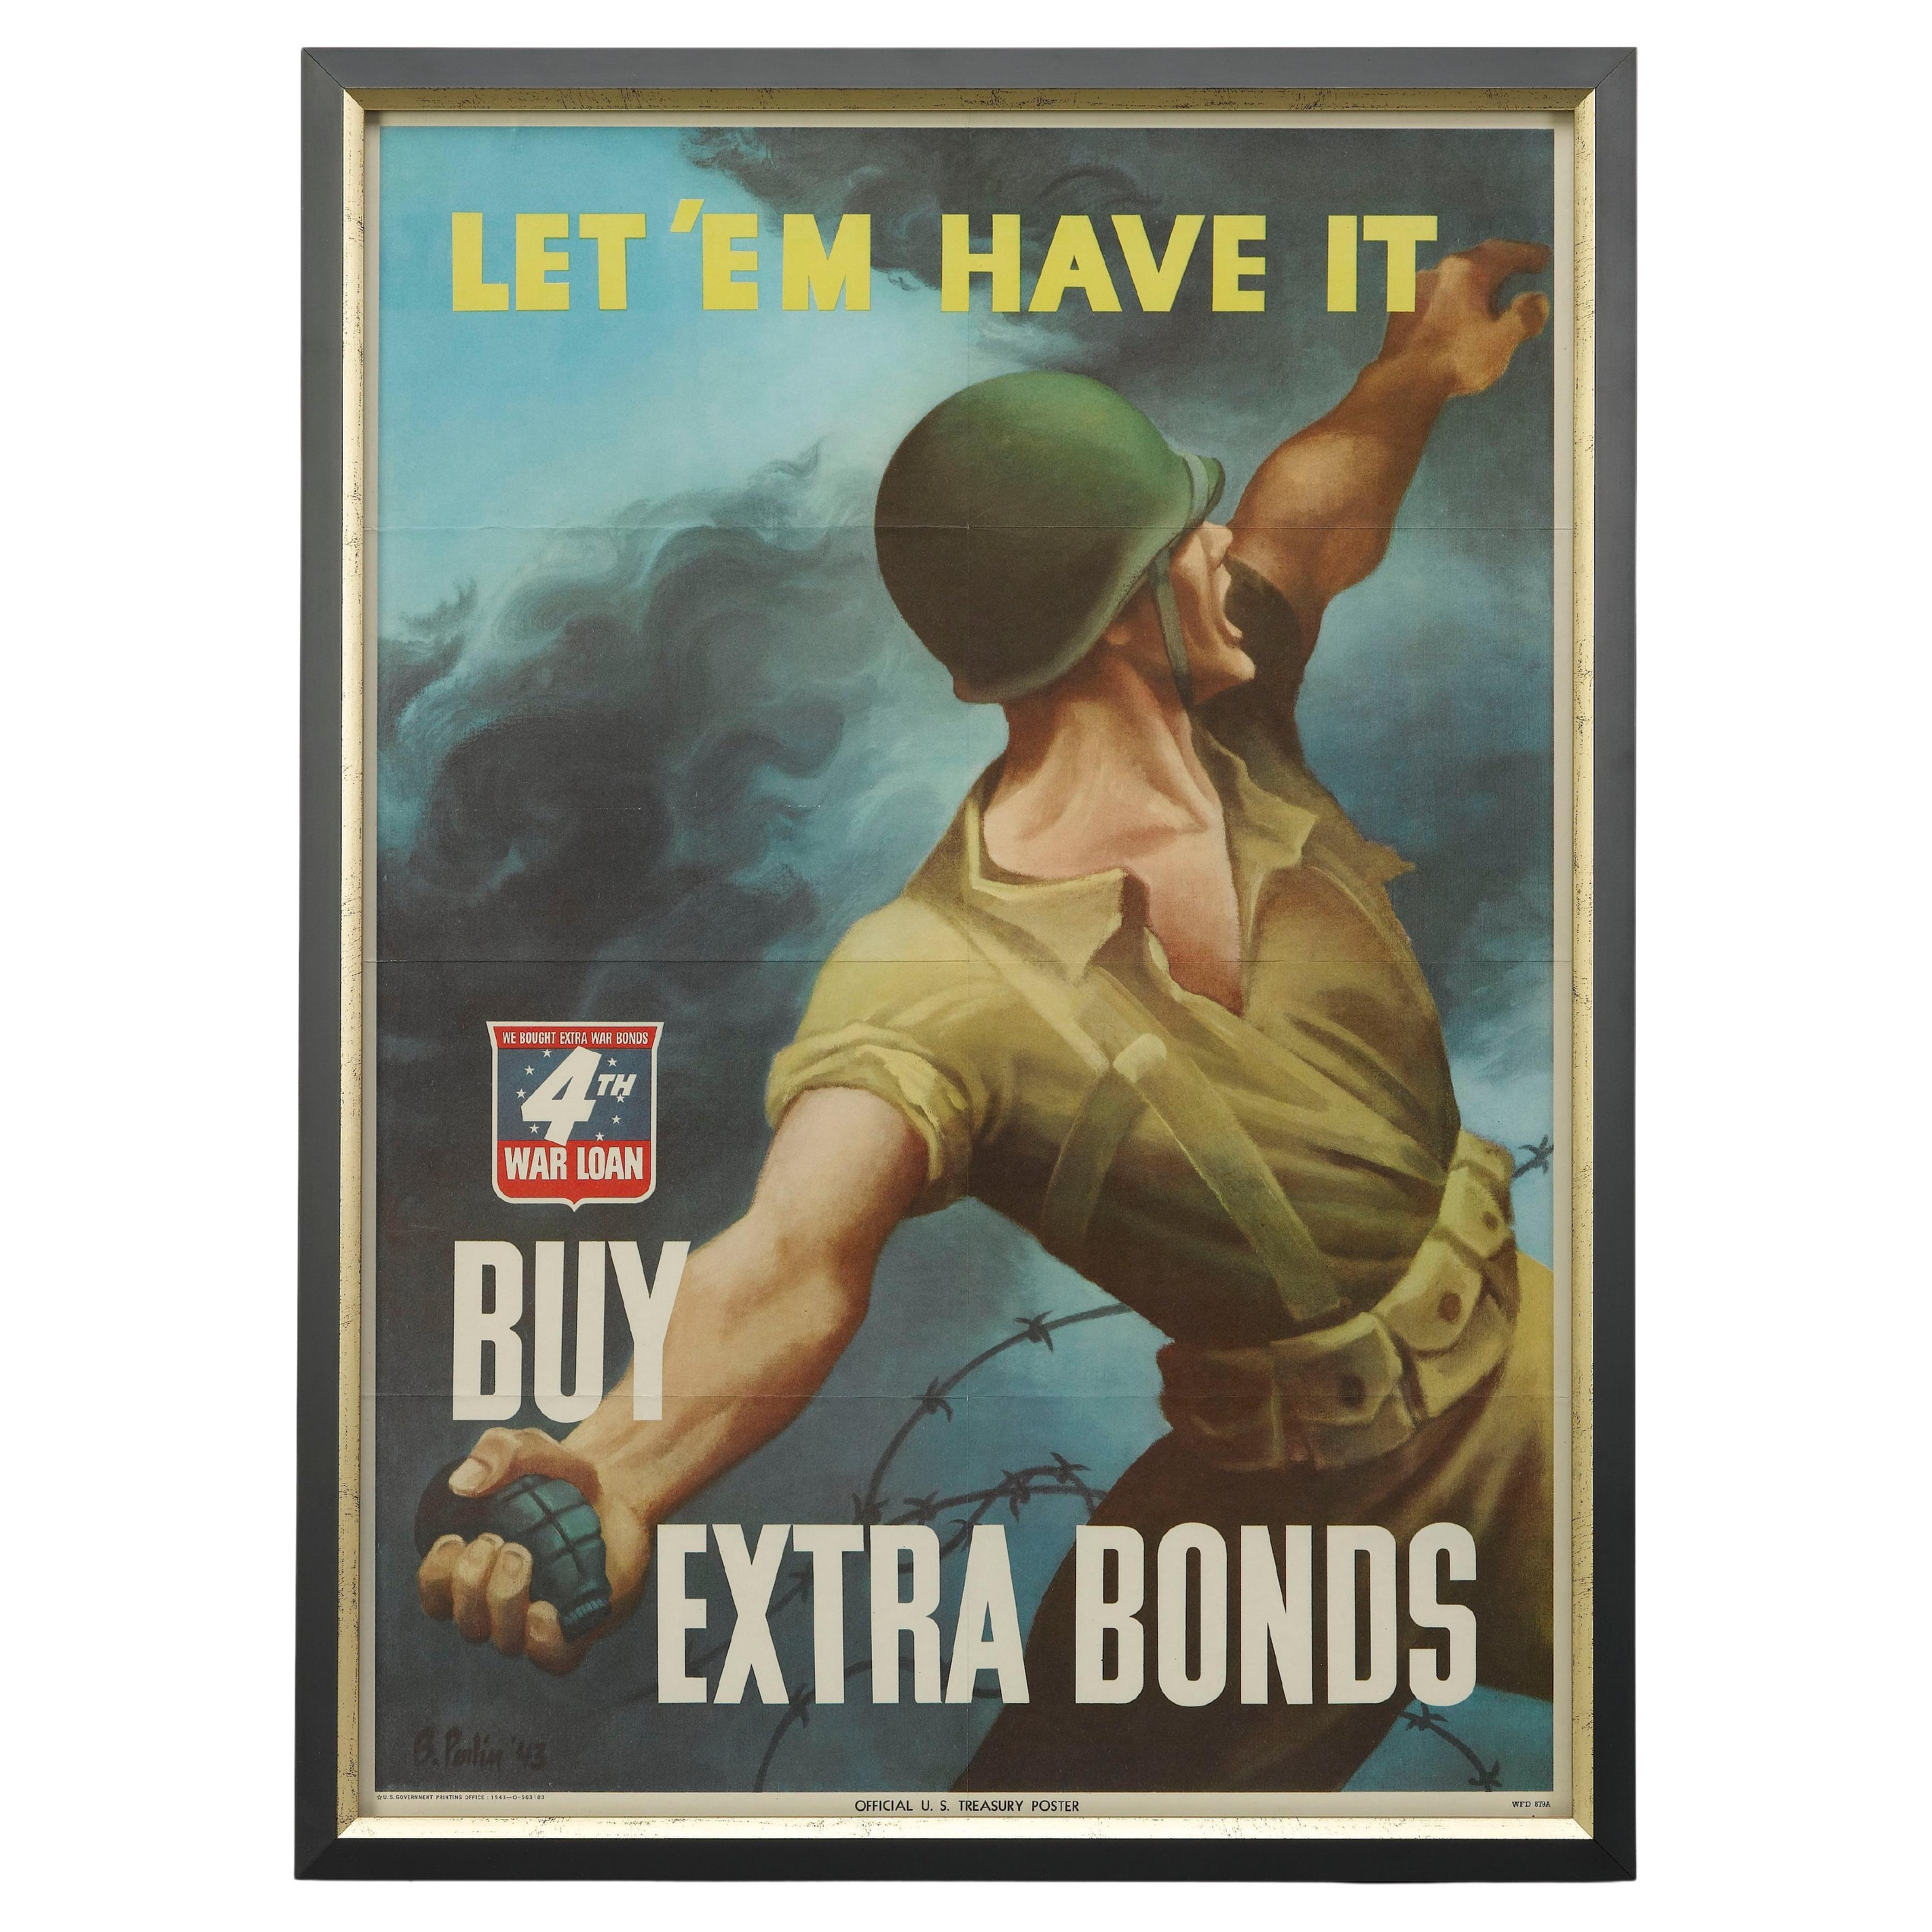 "Let 'Em Have It. Buy Extra Bonds" Vintage WWII 4th War Loan Poster, 1943